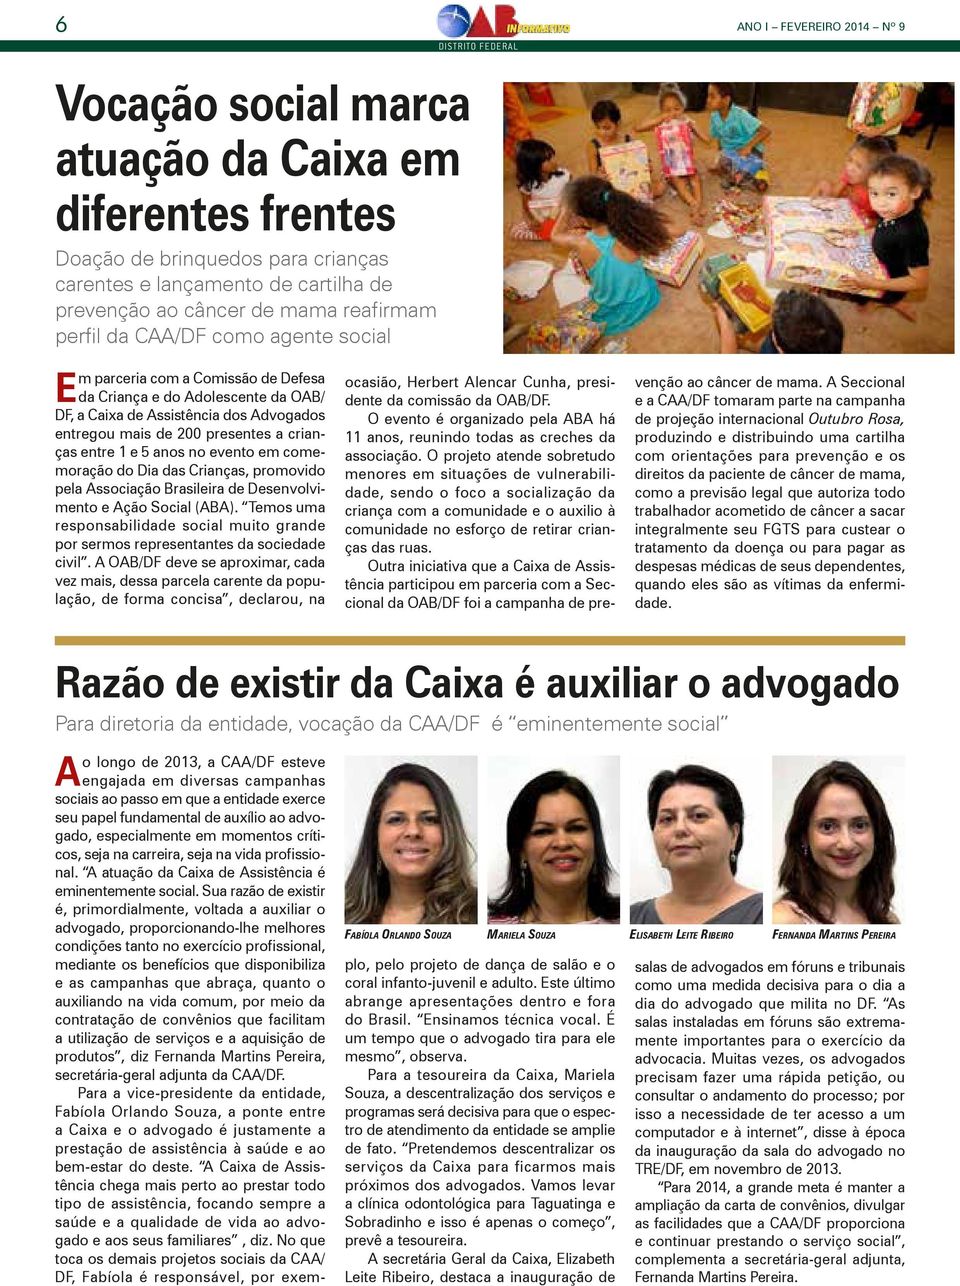 crianças entre 1 e 5 anos no evento em comemoração do Dia das Crianças, promovido pela Associação Brasileira de Desenvolvimento e Ação Social (ABA).